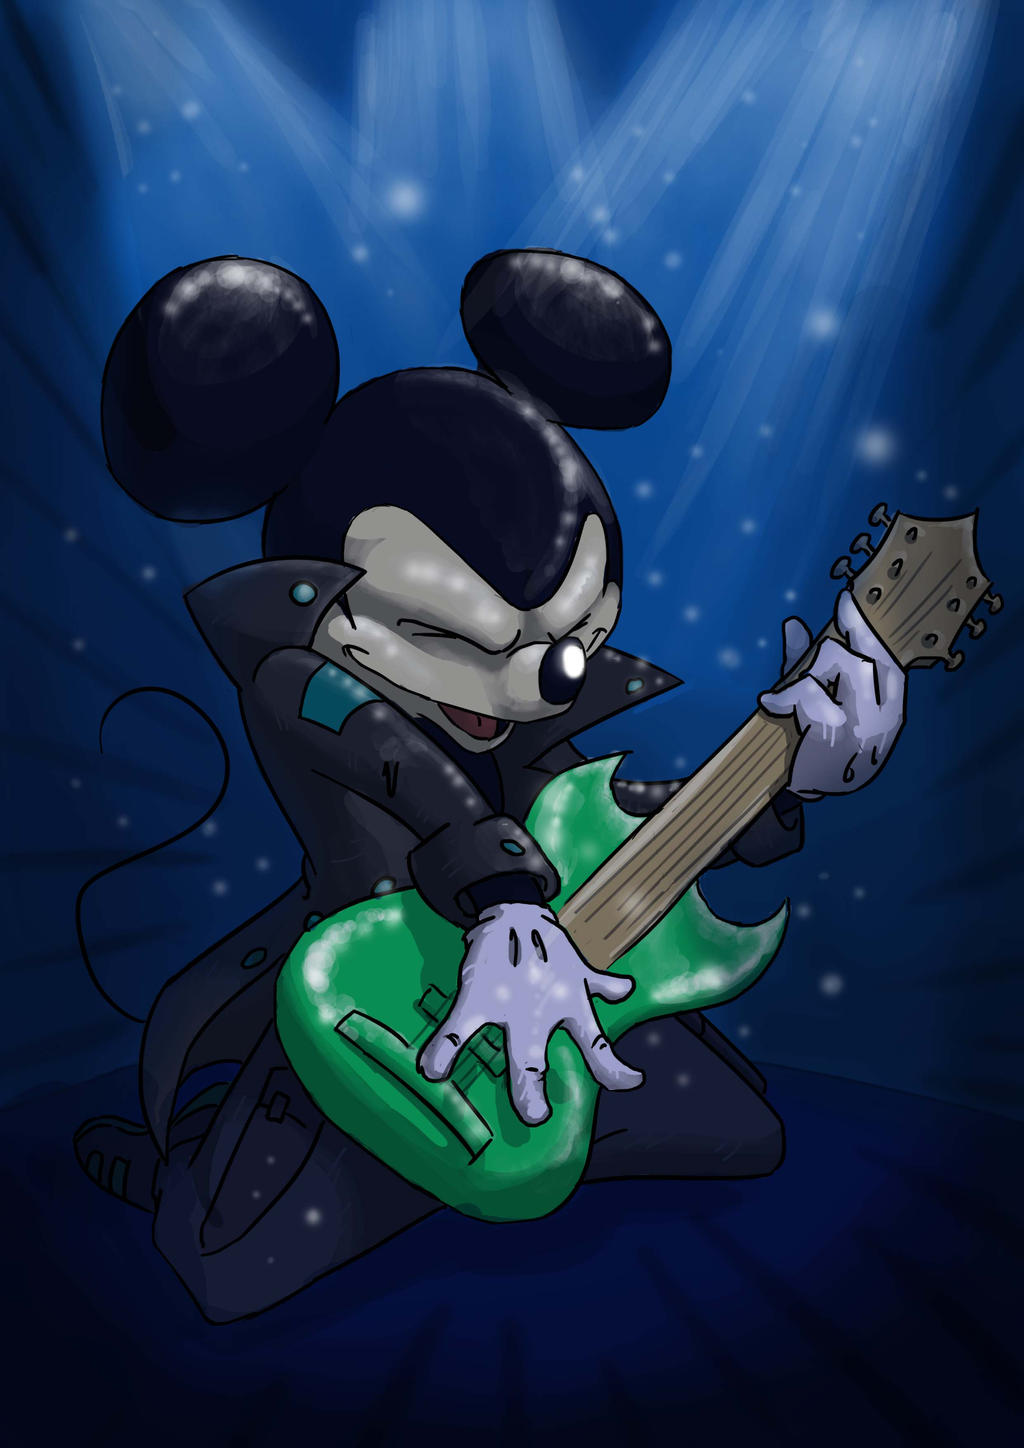 rockstar_mouse_by_qaizor-d5jj1j3.jpg